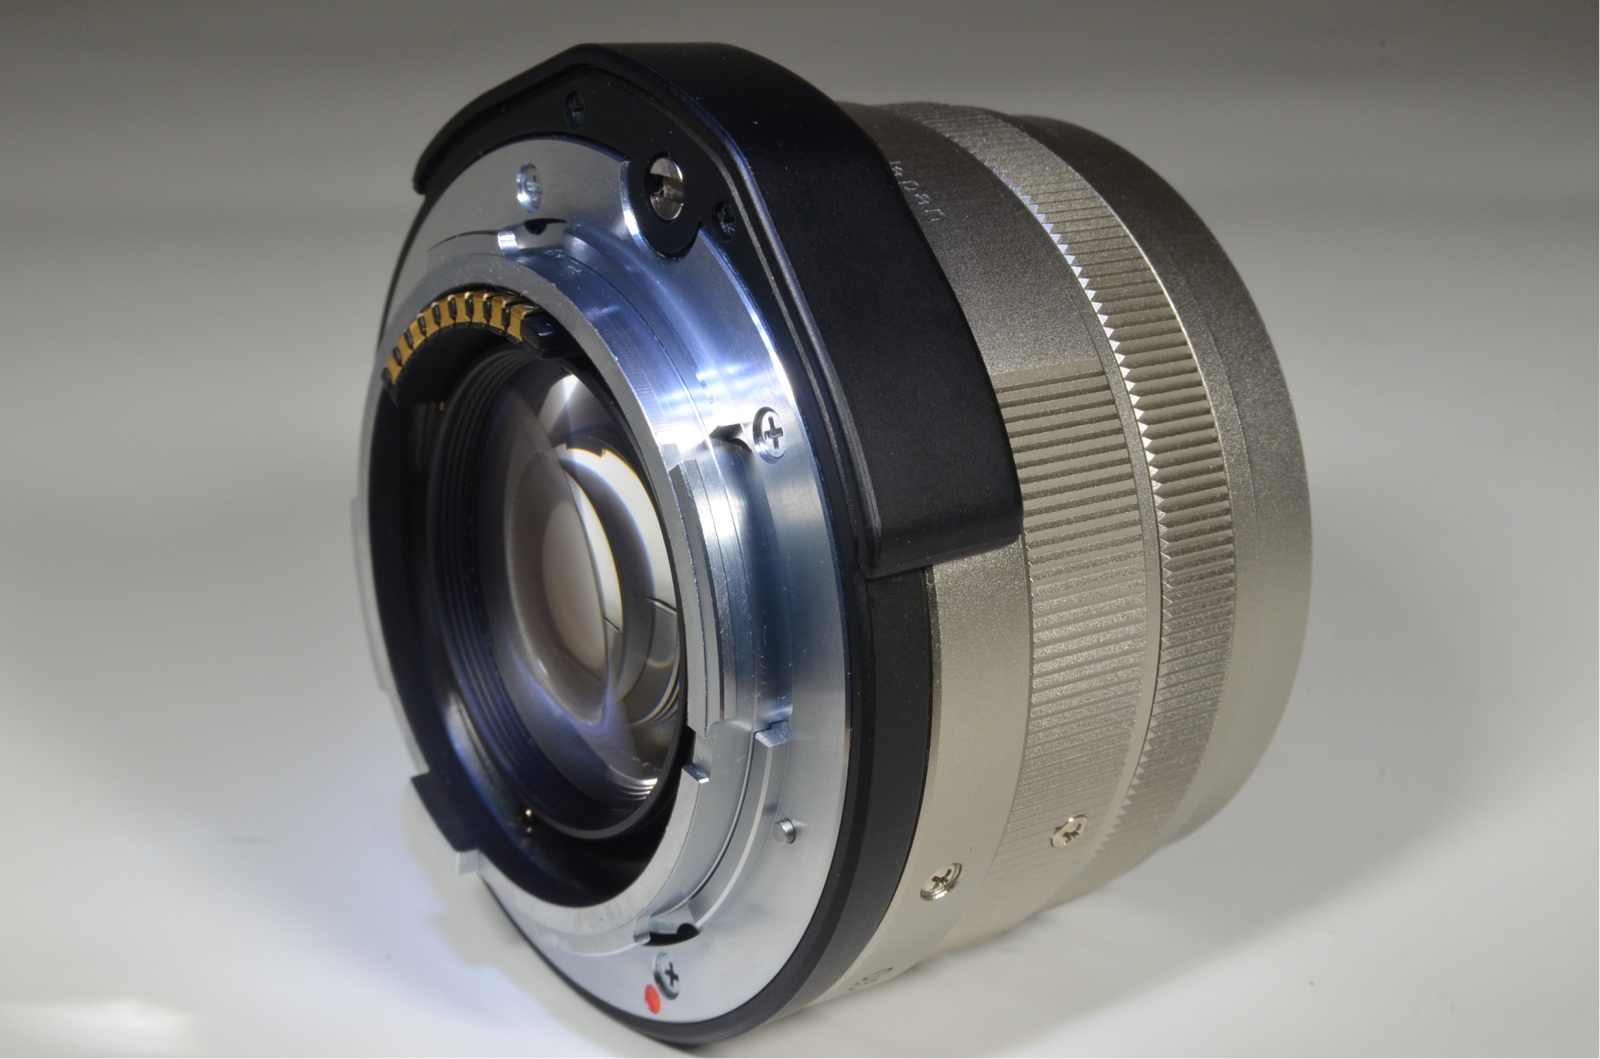 contax g2 film camera with planar 45mm f2 / biogon 28 f2.8 / sonnar 90mm f2.8